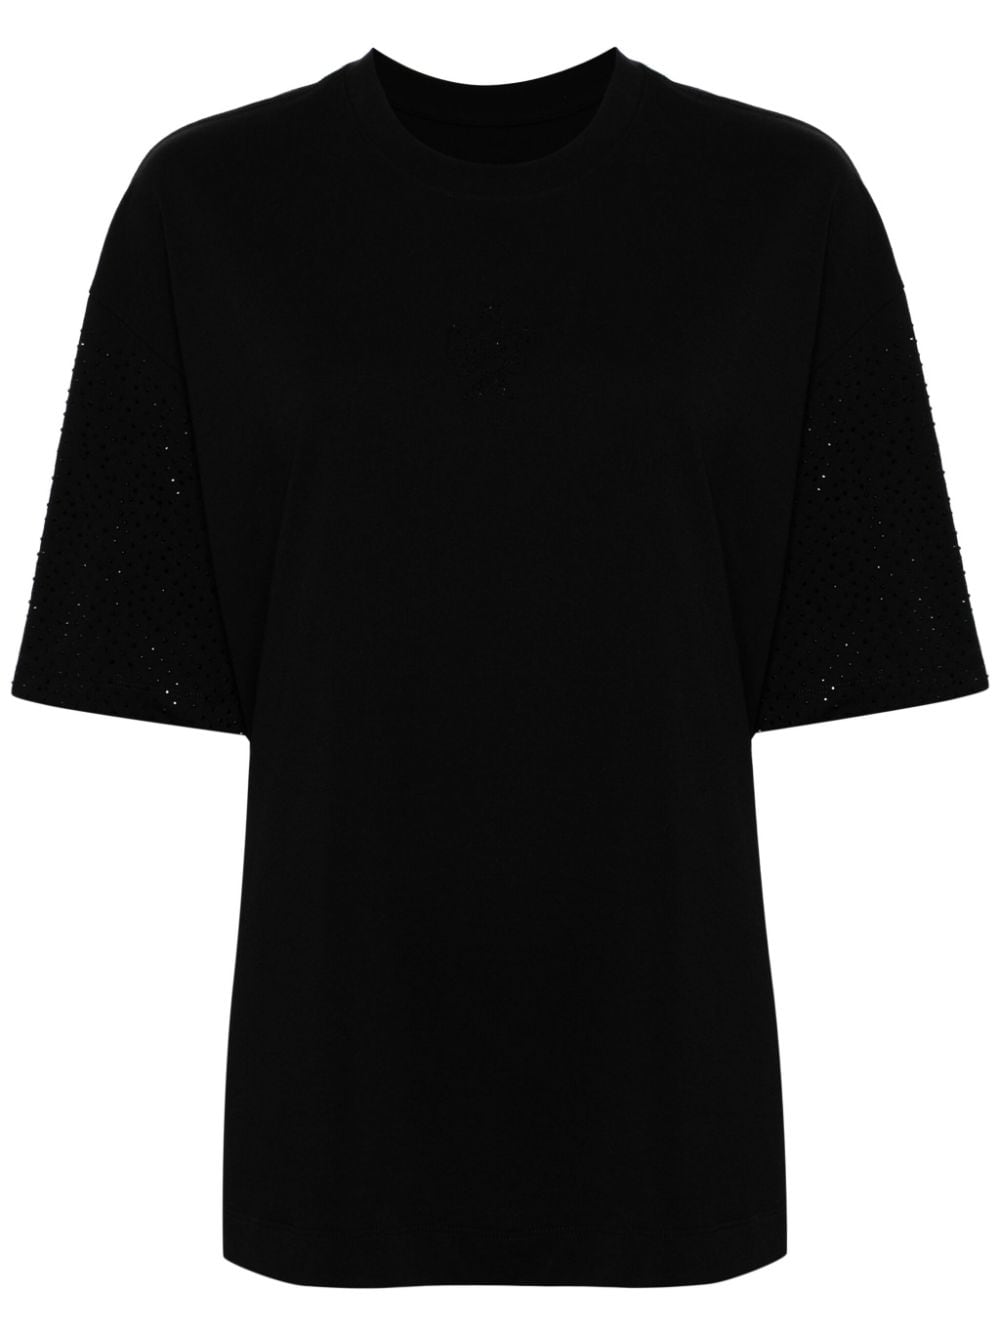 Jnby Stud-embellished Cotton T-shirt In Black